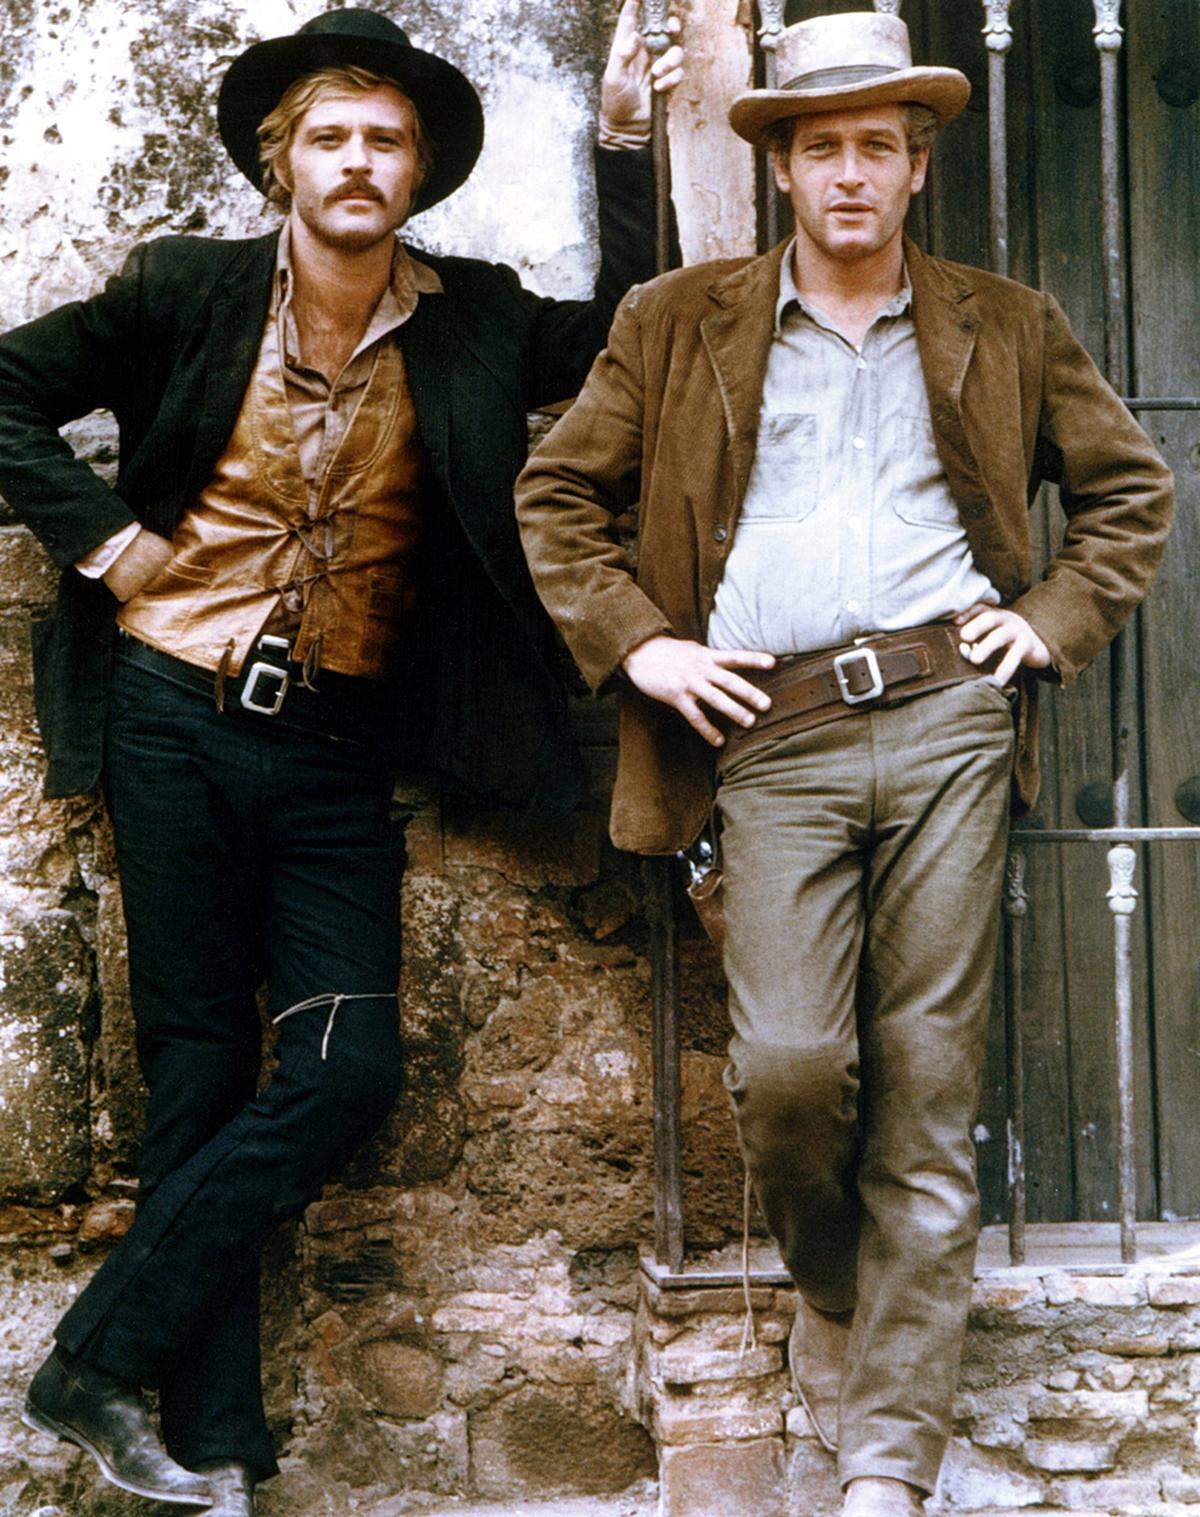 "Butch Cassidy and the Sundance Kid" war die erste Kollaboration von Robert Redford und Paul Newman: Für Regisseur George Roy Hill spielten die beiden die Zug- und Bankräuber Butch und Sundance. Die Sympathie des Publikums galt dabei eindeutig den zwei Banditen. Die Western-Komödie wurde ein großer kommerzieller Erfolg. Legendär ist das Ende: man sieht die beiden in einem eingefrorenen Bild kurz vor ihrem (höchstwahrscheinlichen) Tod. Nach seiner berühmten Figur benannte Redford später auch sein Filmfestival.